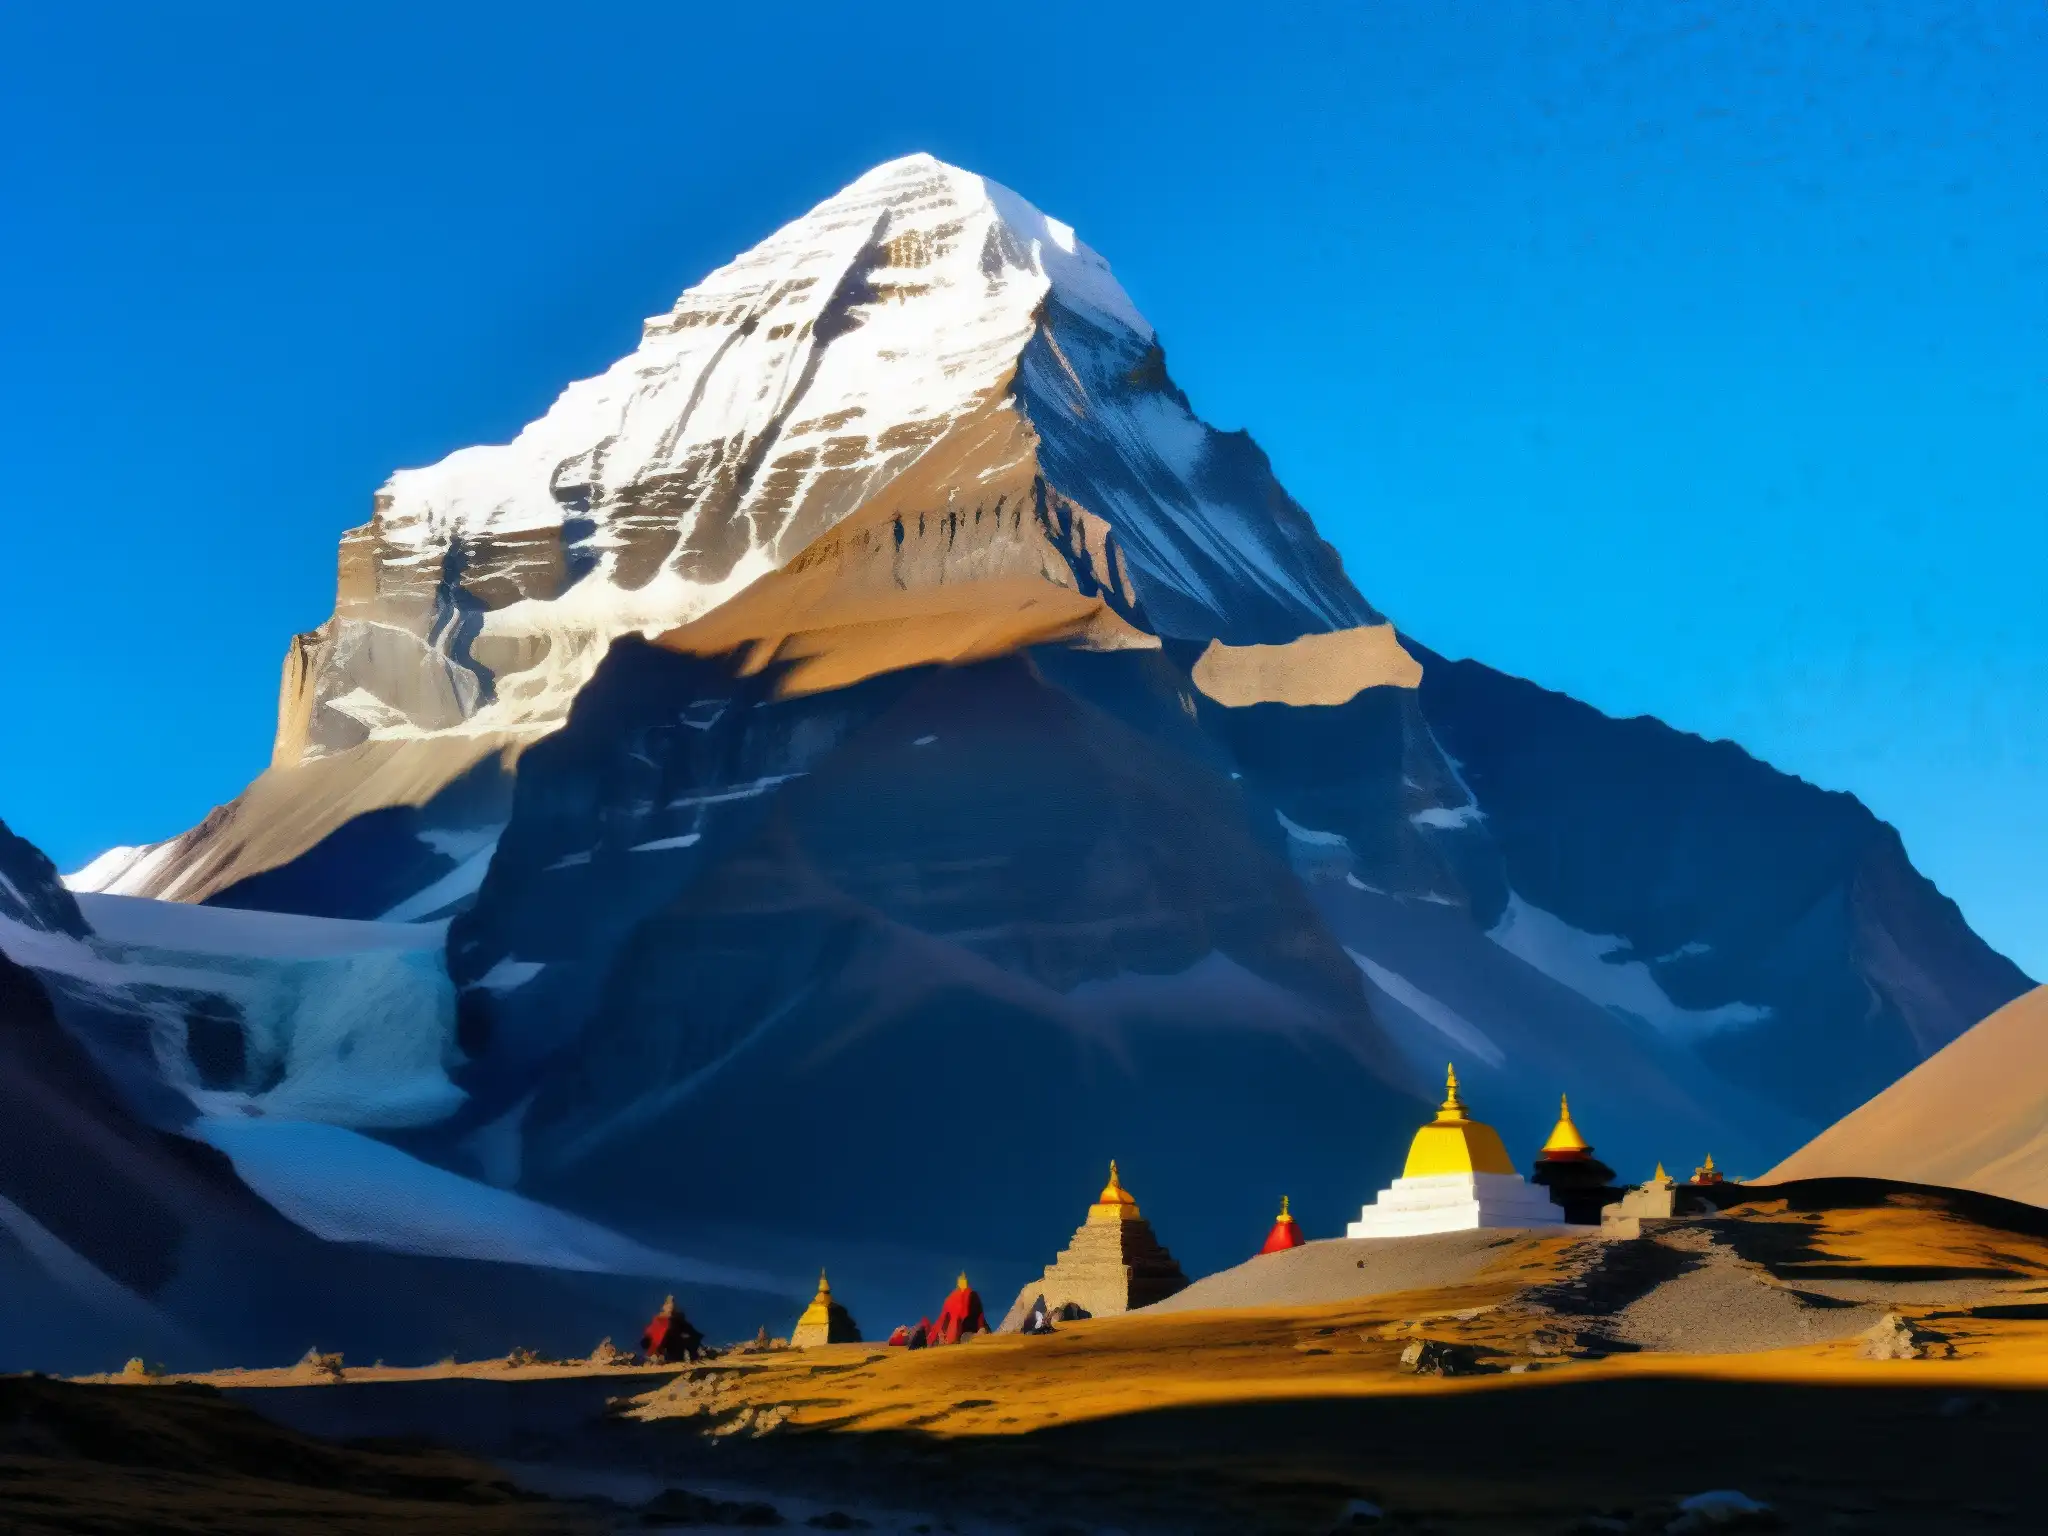 La majestuosa montaña Kailash iluminada por el sol al atardecer, rodeada de leyendas urbanas y coloridas banderas de oración